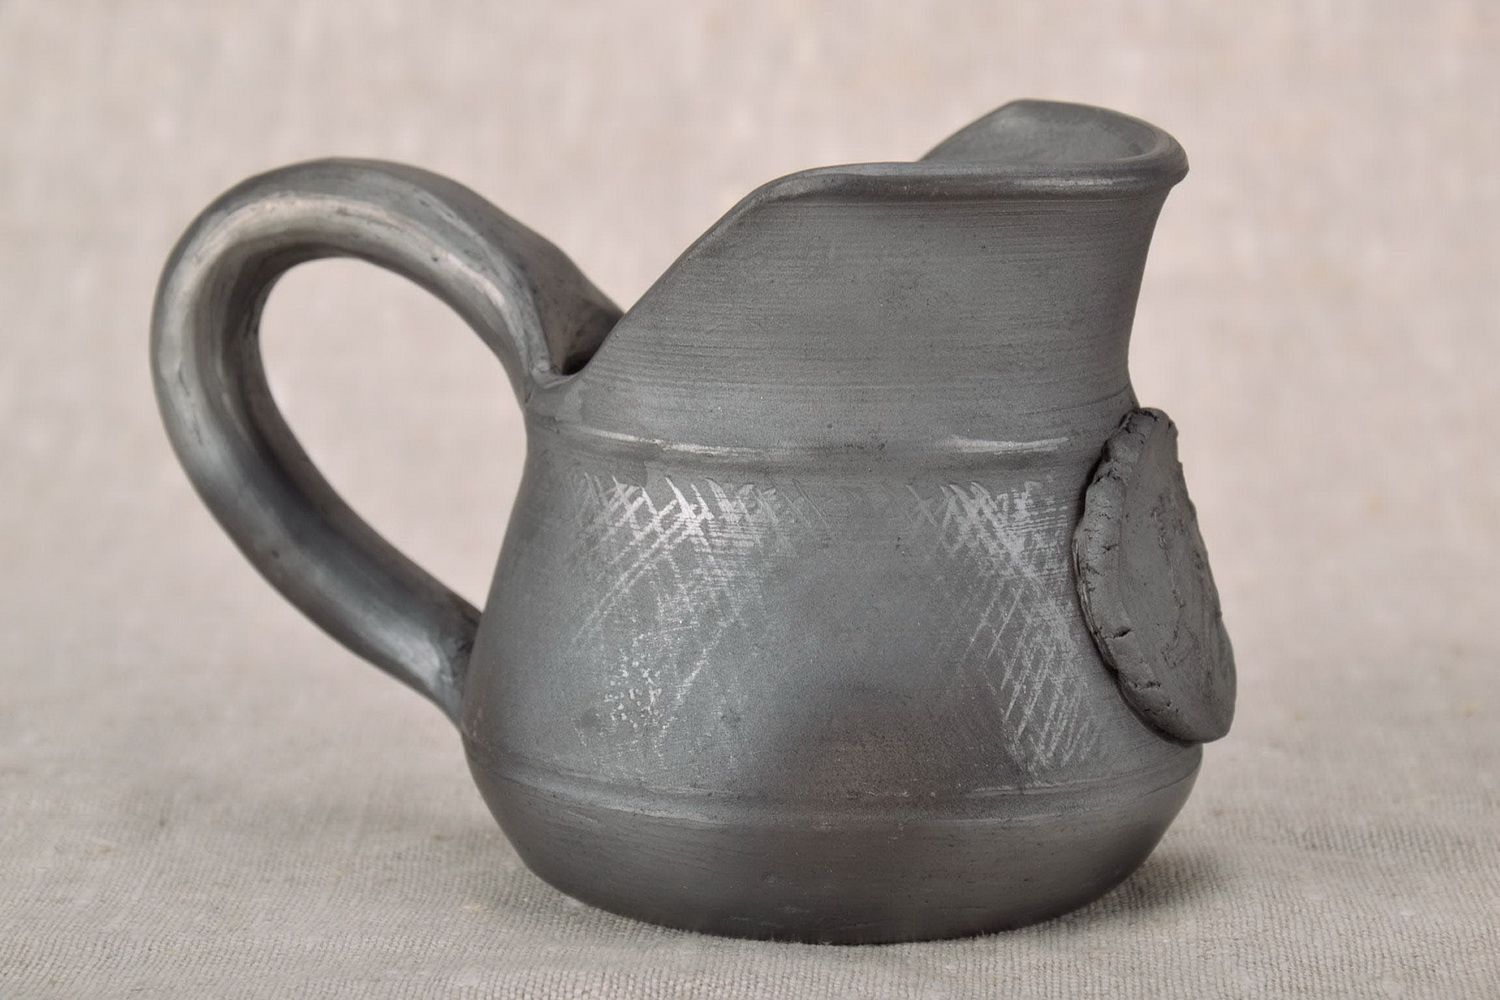 10 oz ceramic creamer jug with handle in black color 0,5 lb photo 2